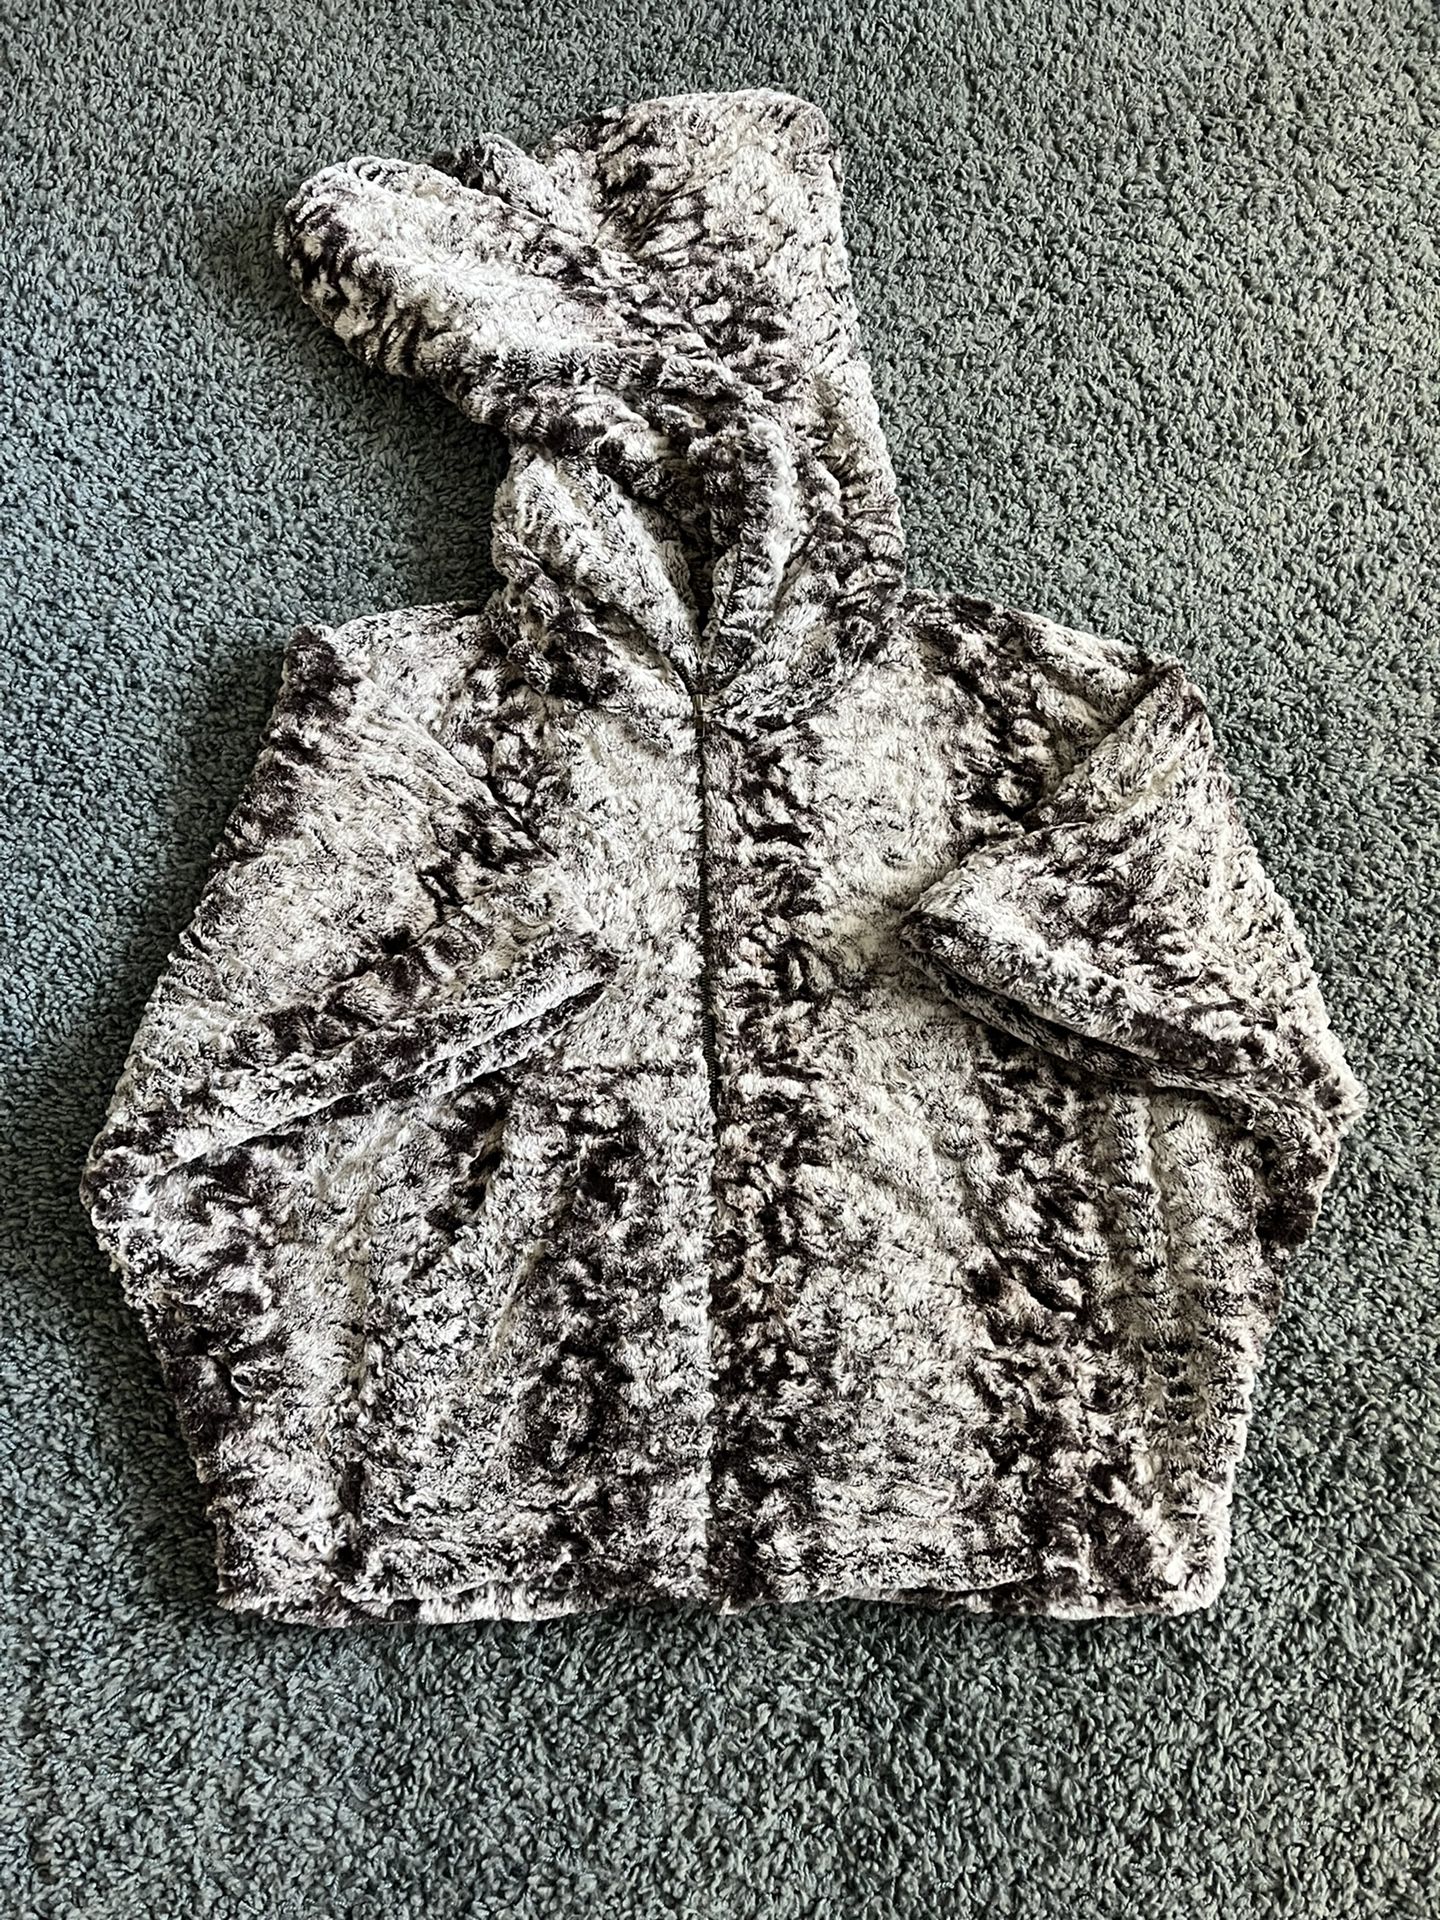 Dolce Vita Faux Fur Full-Zip Oversized Poncho Hoodie Sweater Jacket Women’s L